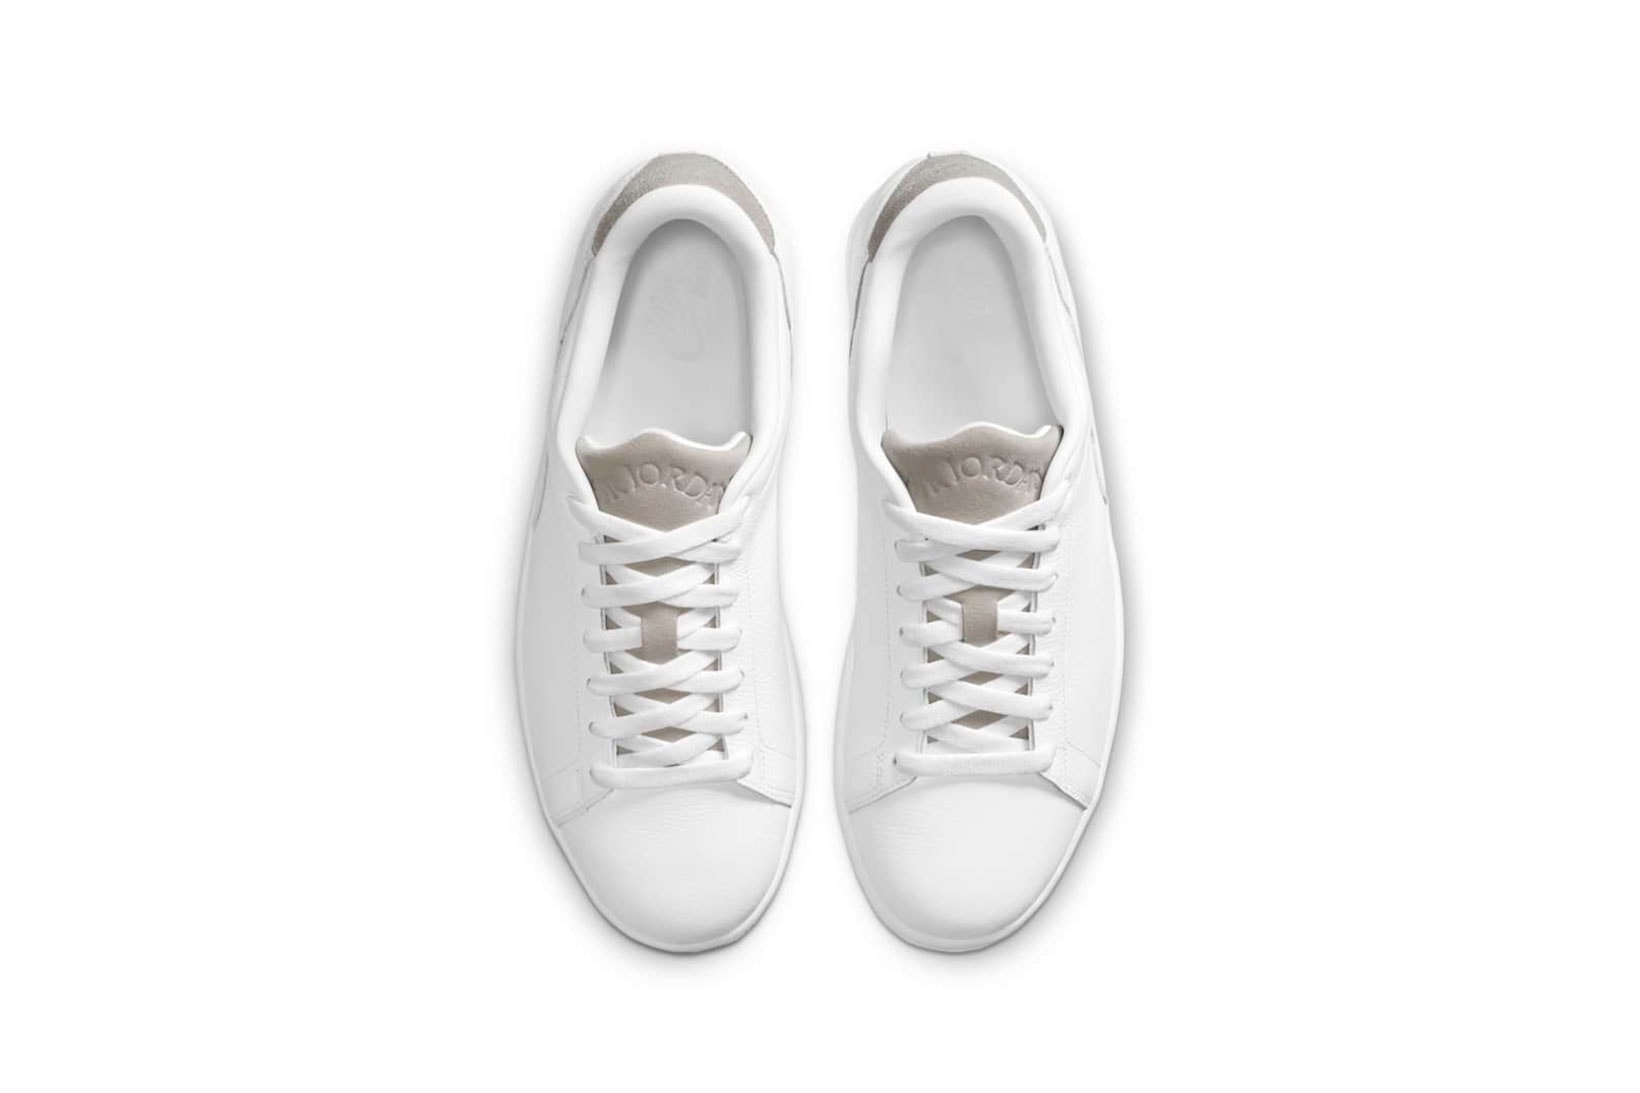 nike air jordan 1 centre court sneakers white colorway shoes footwear sneakerhead